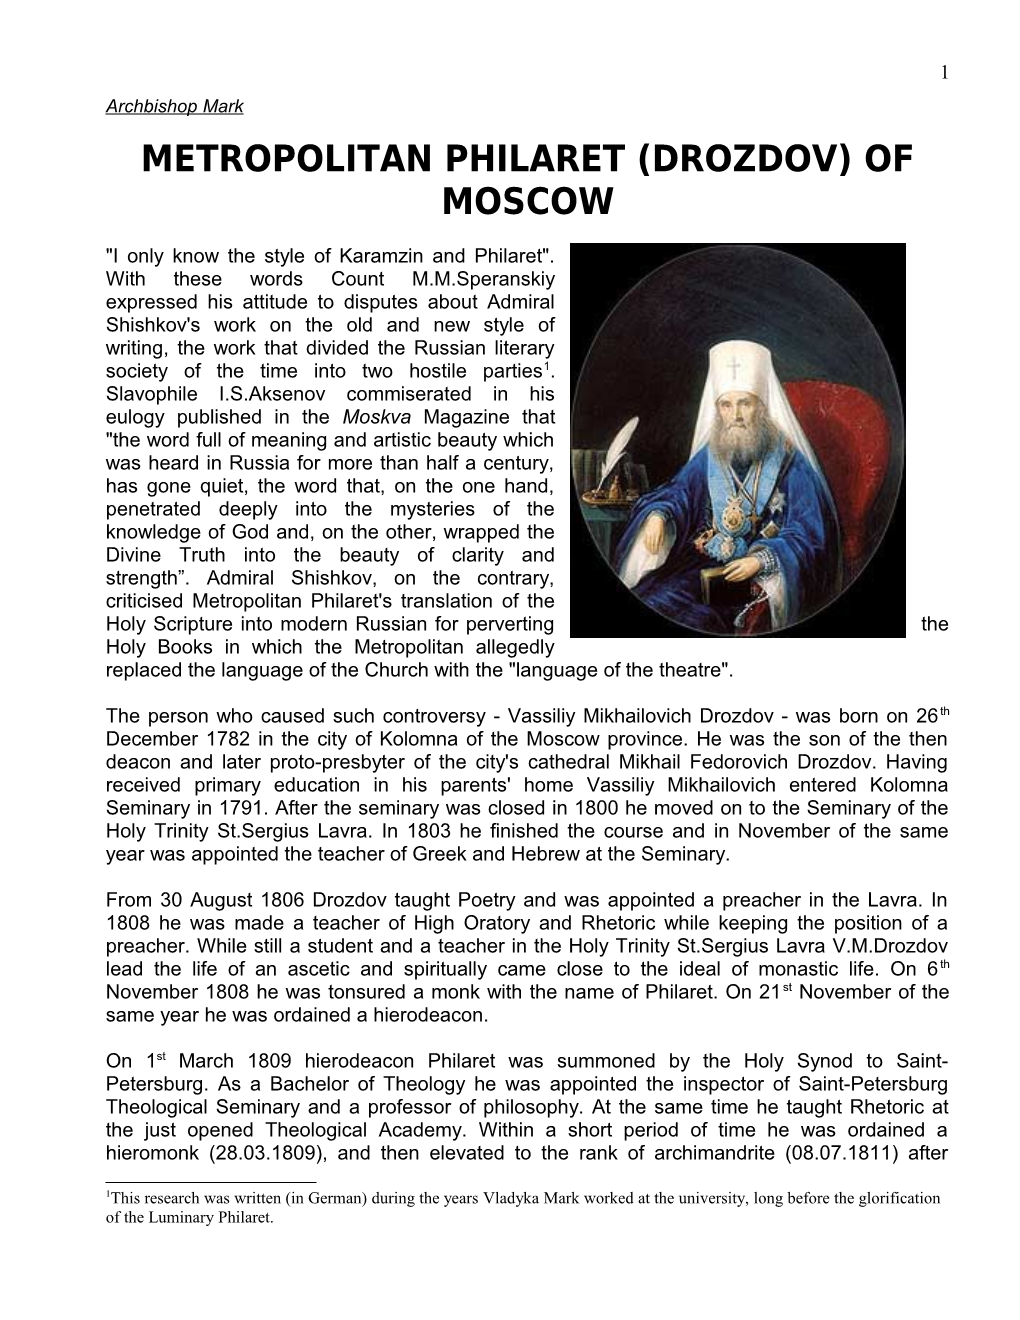 Metropolitan Philaret (Drozdov) of Moscow